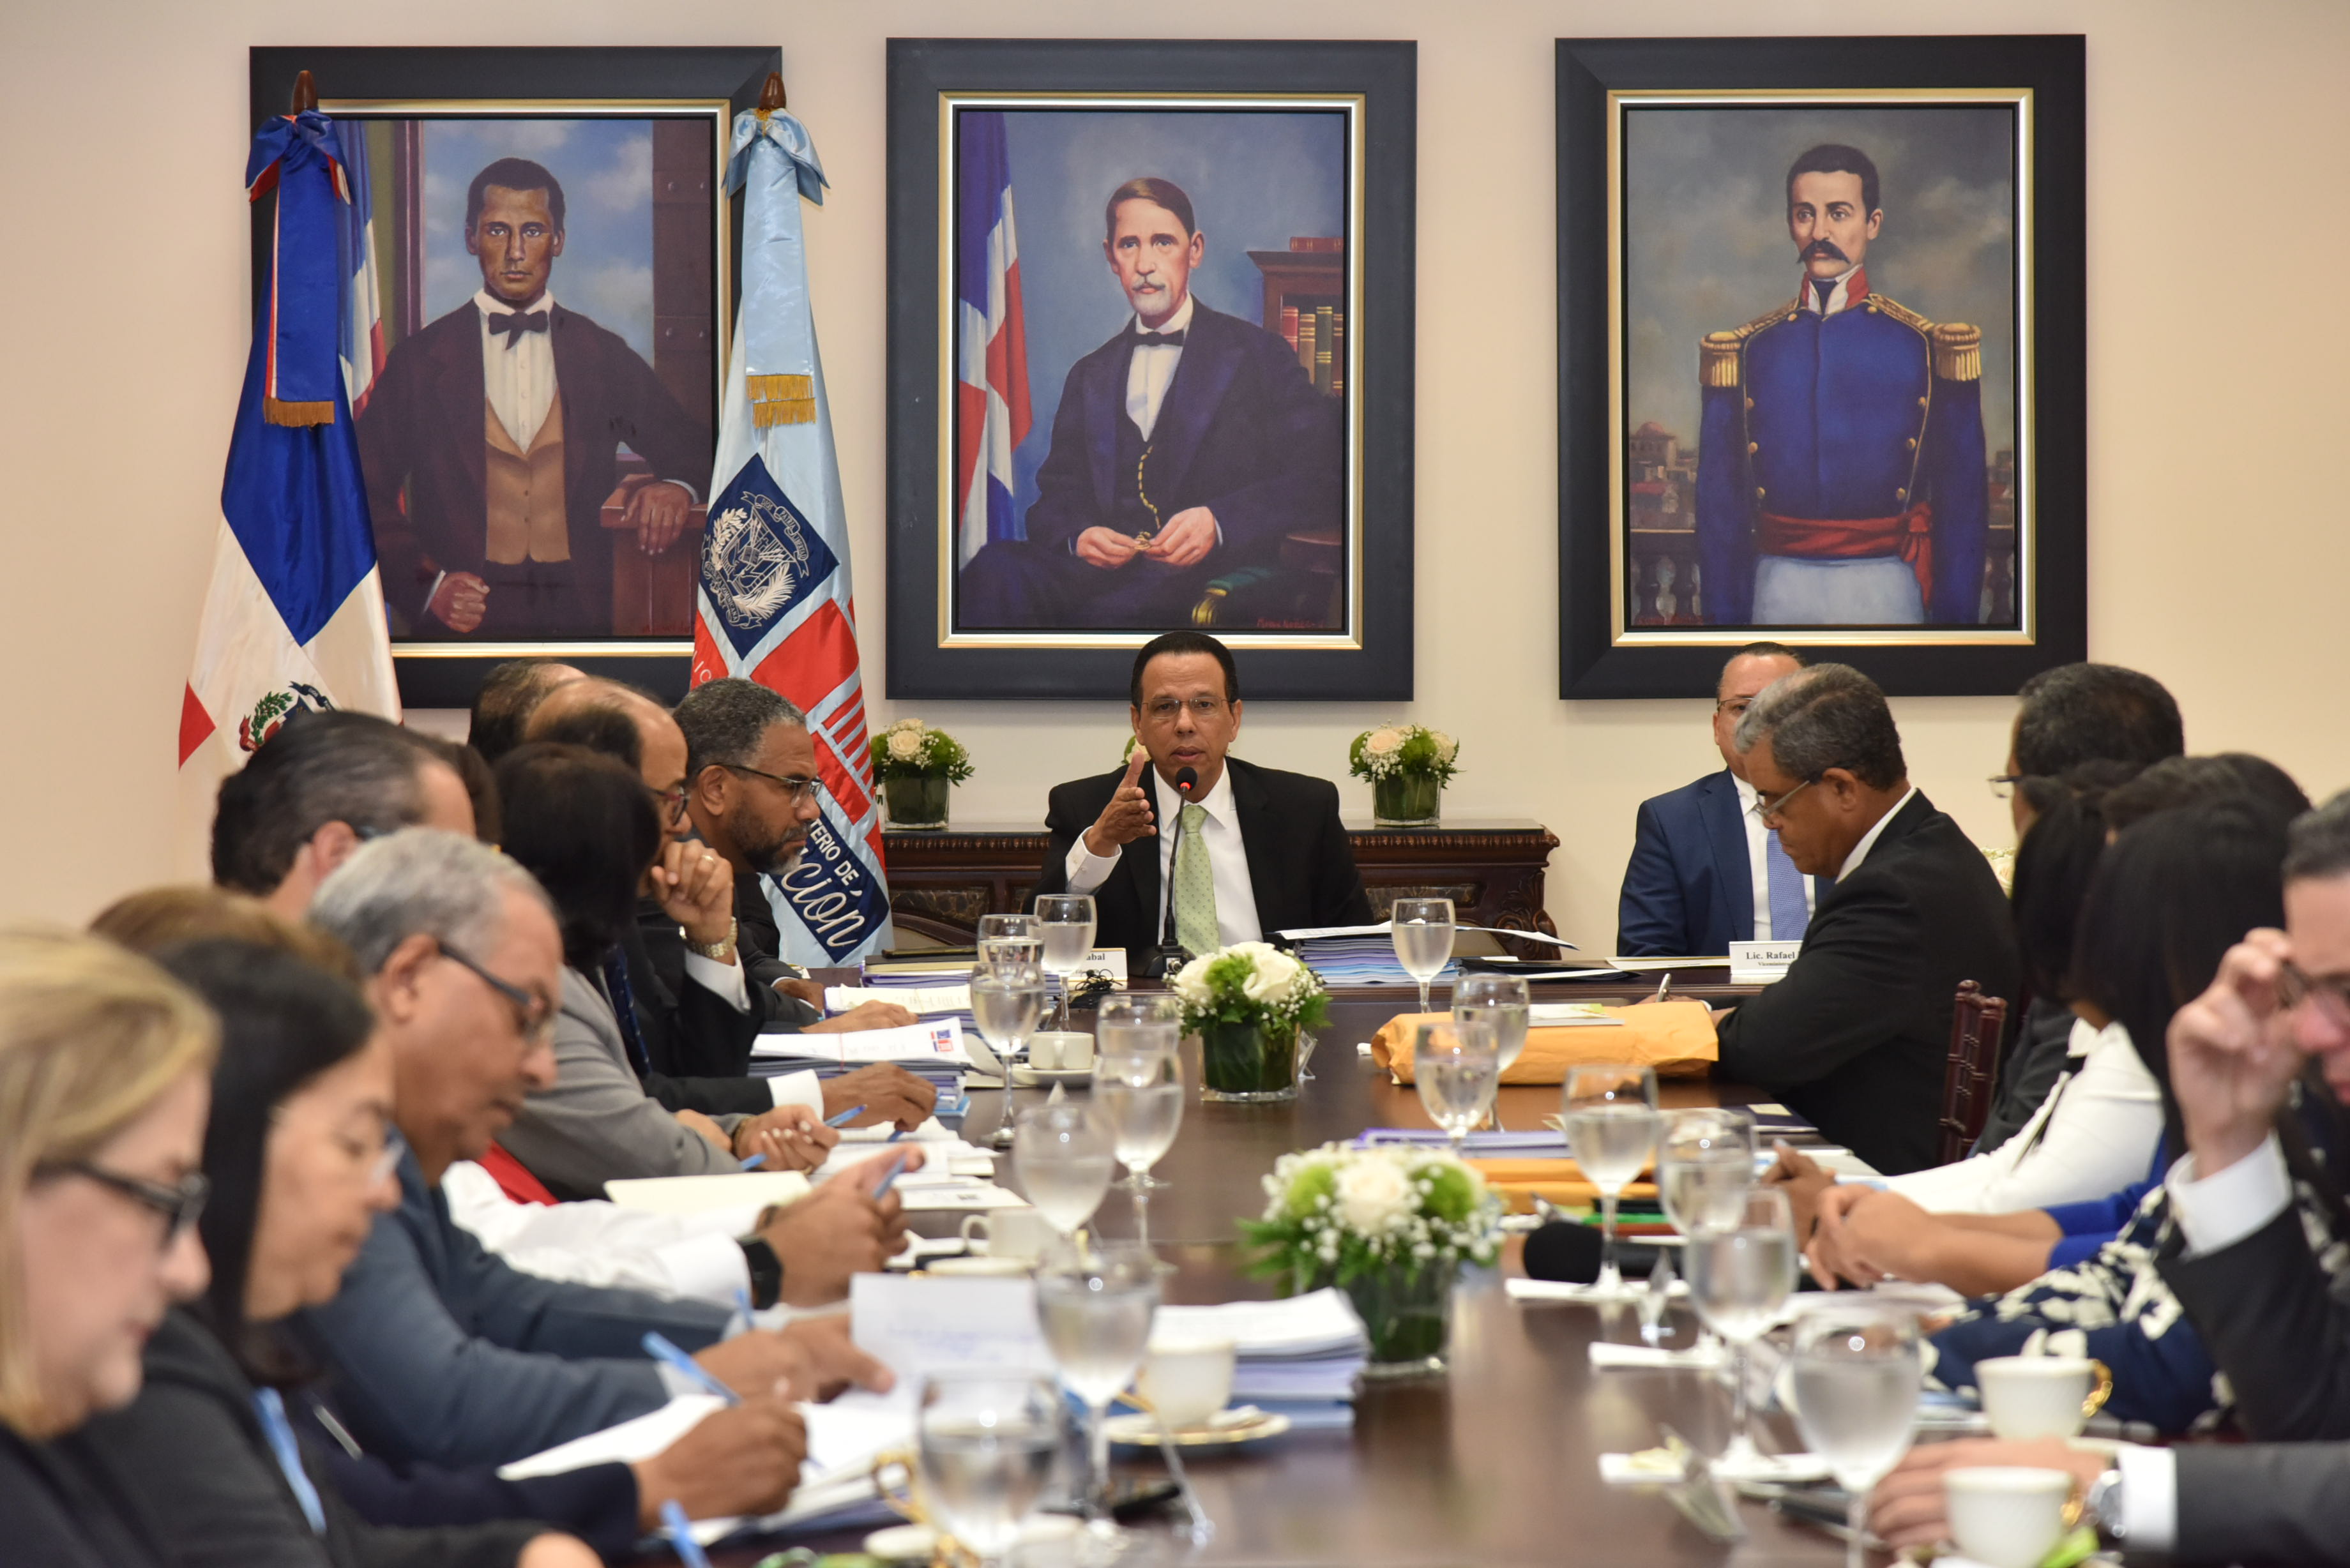  imagen Sentados a la mesa, en el centro Ministro Peña Mirabal junto a demás personalidades durante sesión. 